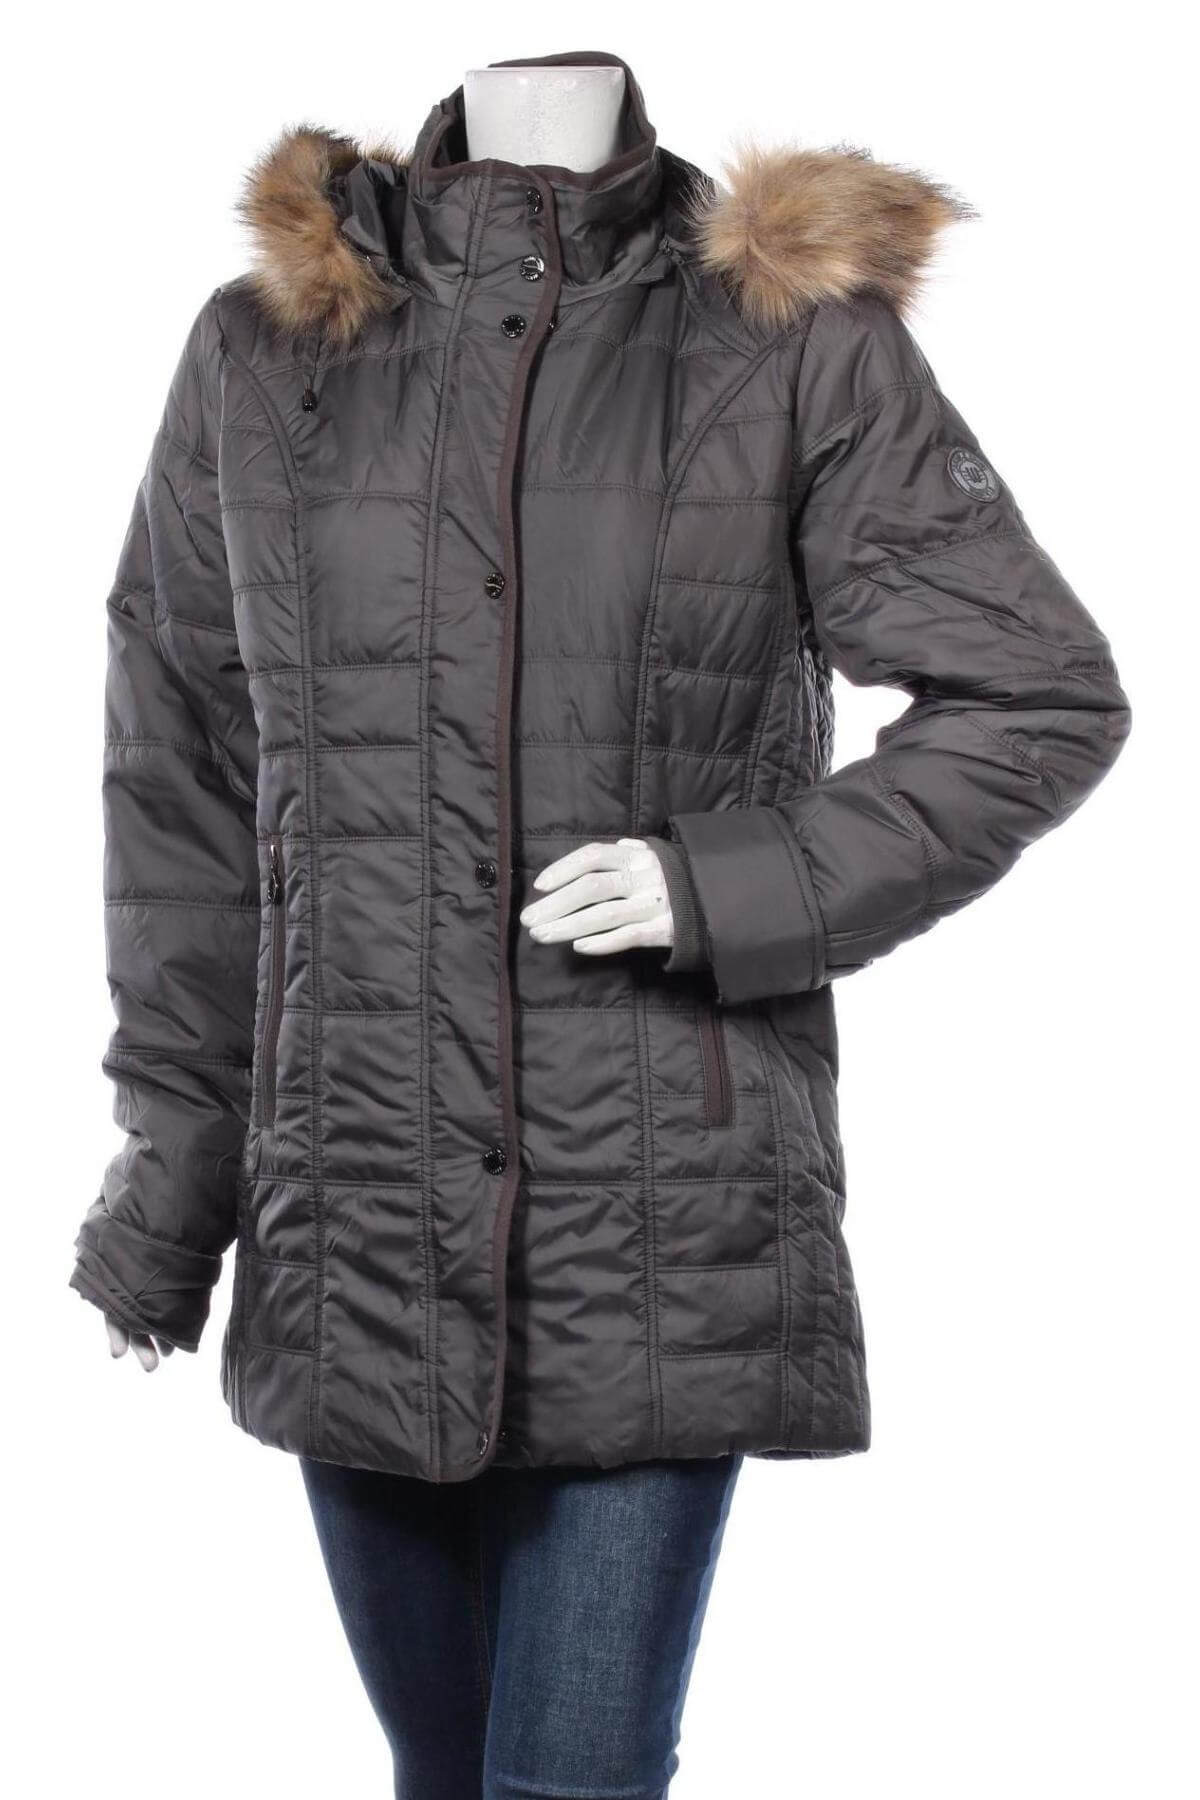 Dámská zimní bunda s odepínací kapucí - šedá - vel. 42